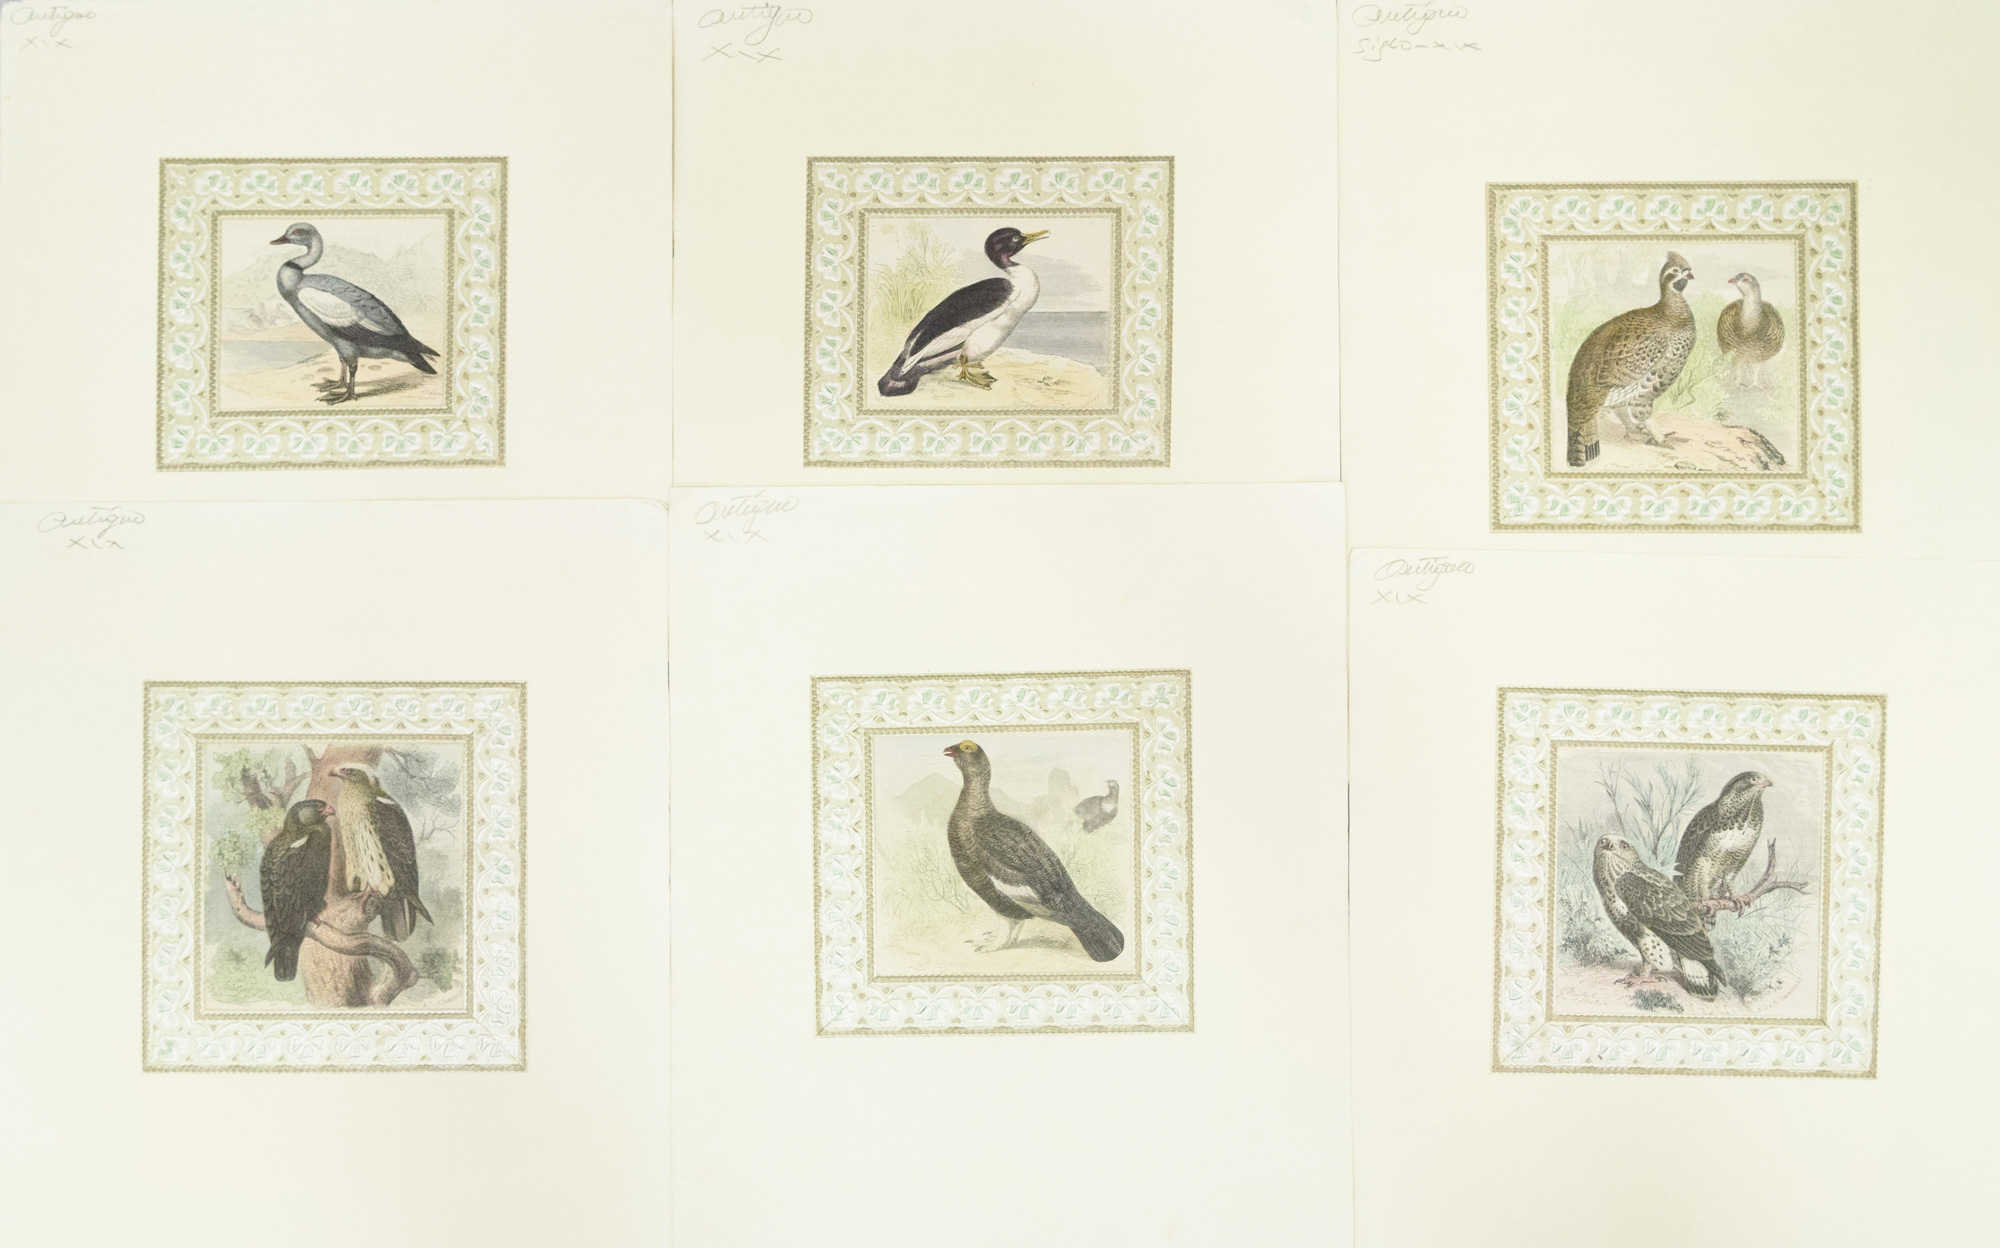 Seis grabados iluminados a mano de diferentes aves